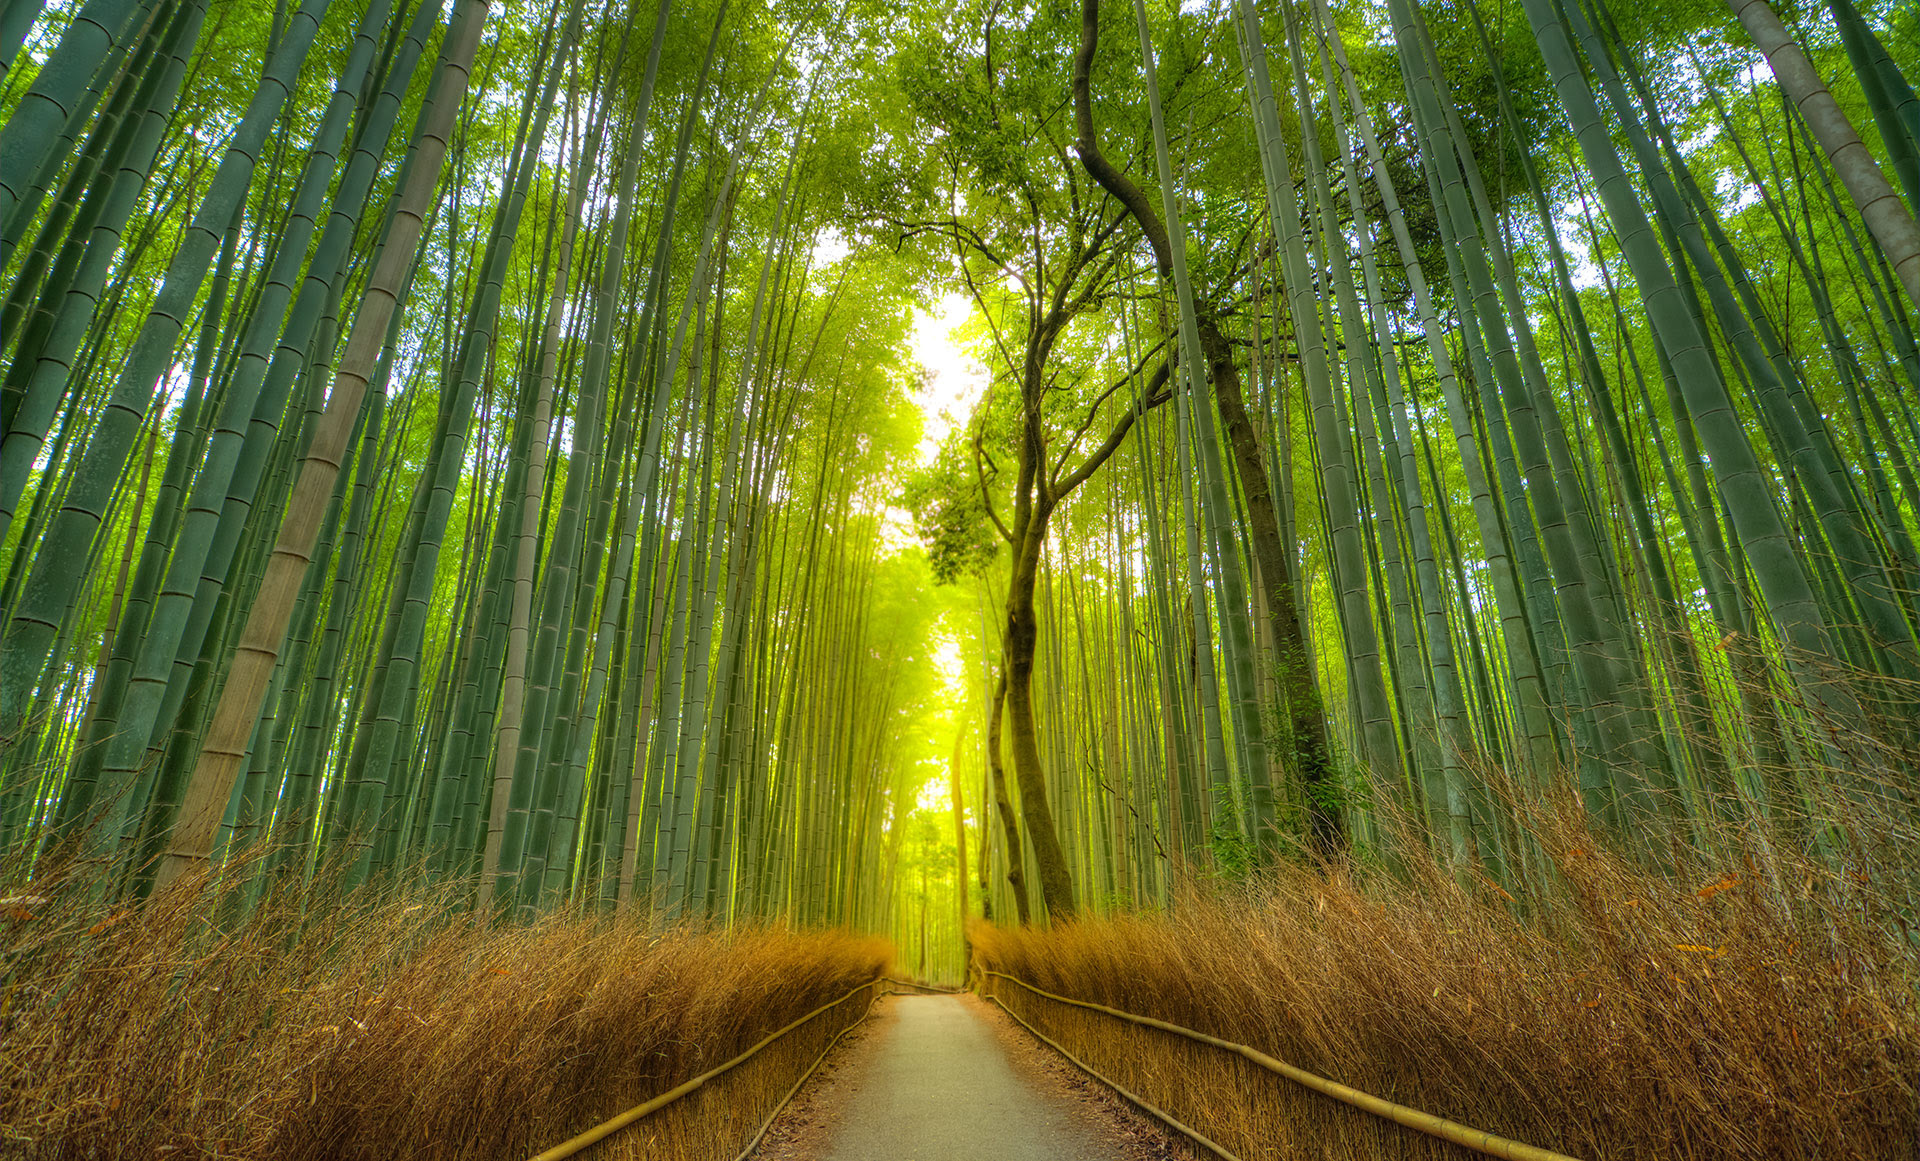 Todo viajero debería experimentar el brillo etéreo y las alturas aparentemente infinitas de este bosque de bambú en las afueras de Kioto (Getty Images)